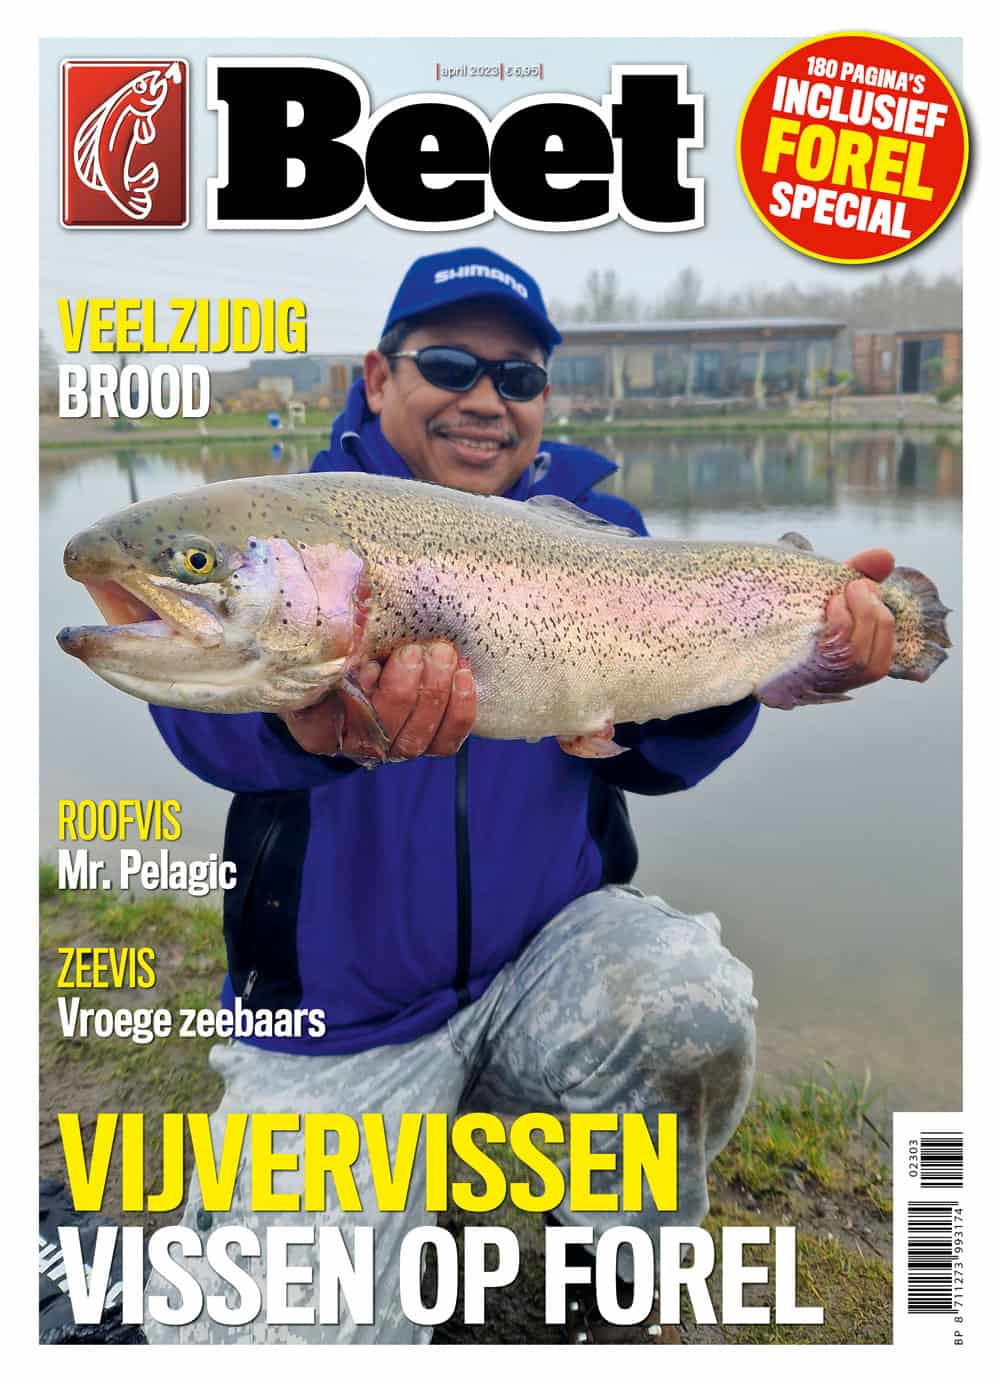 In dit nummer ook een special over het vissen op forel op speciale vijvers en de visserij op zeeforel in Denemarken. Dit en nog veel meer in dit 180 pagina’s dikke nummer.